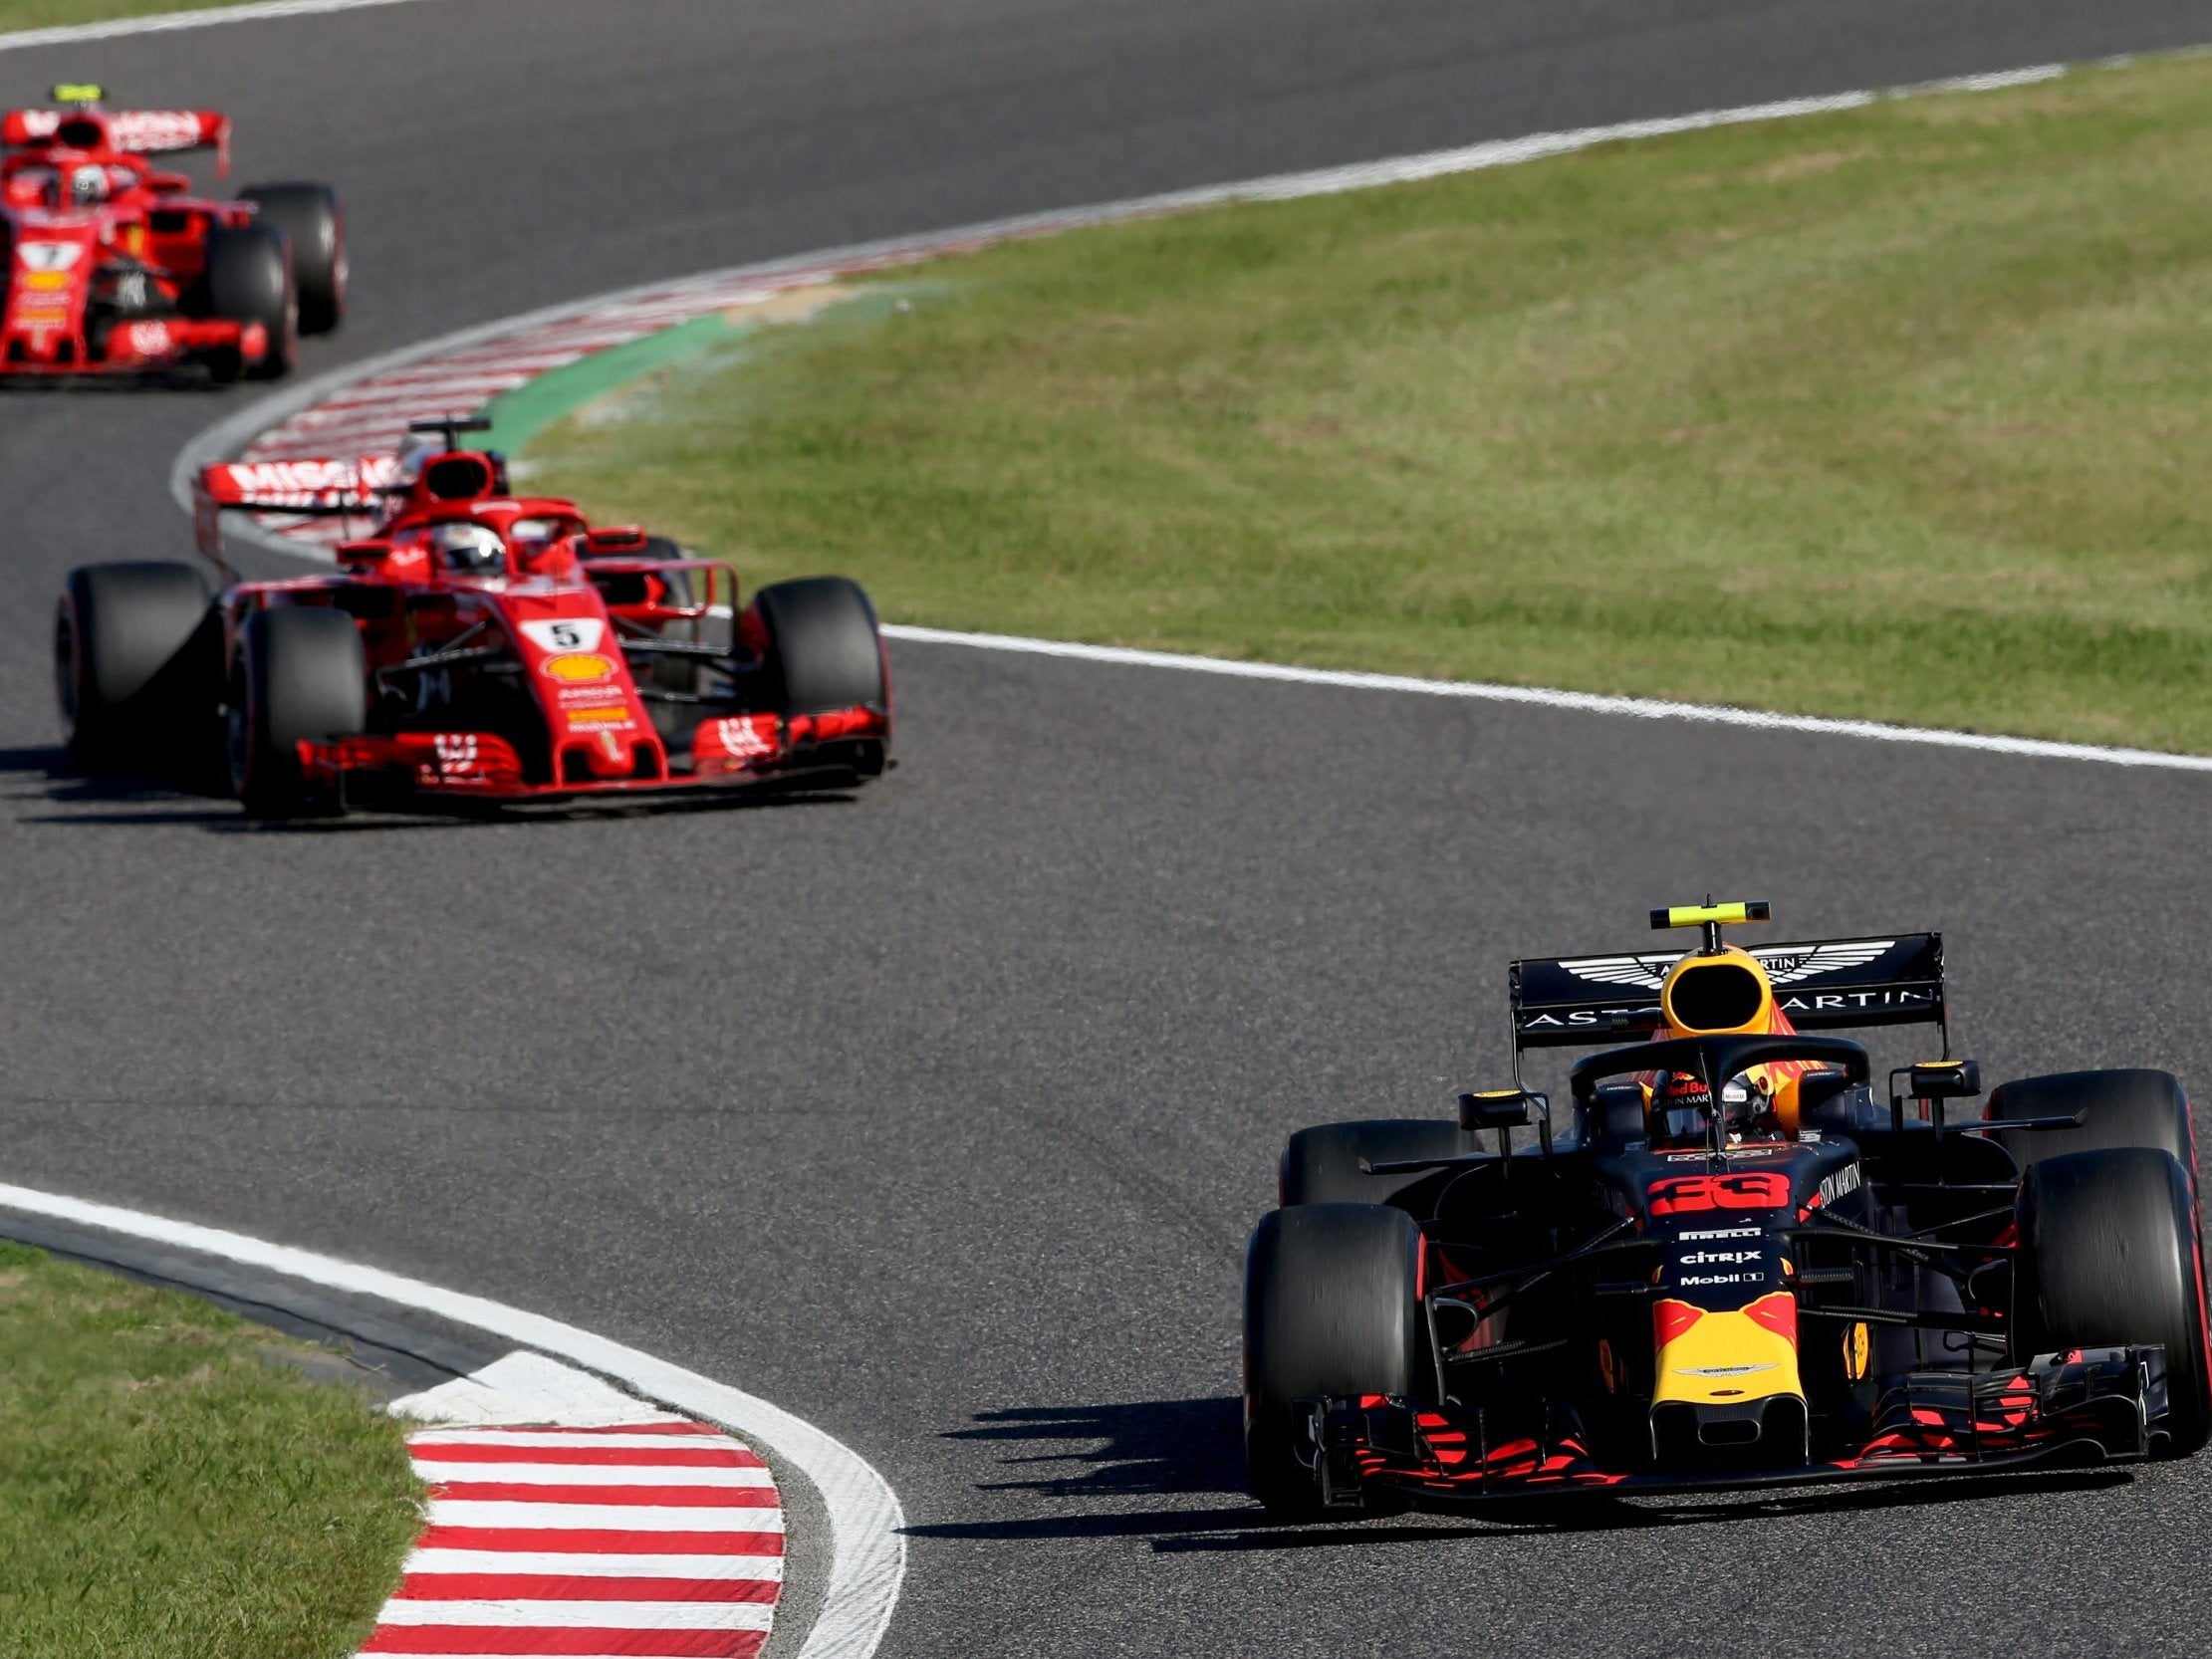 Max Verstappen defended himself against both Ferrari drivers